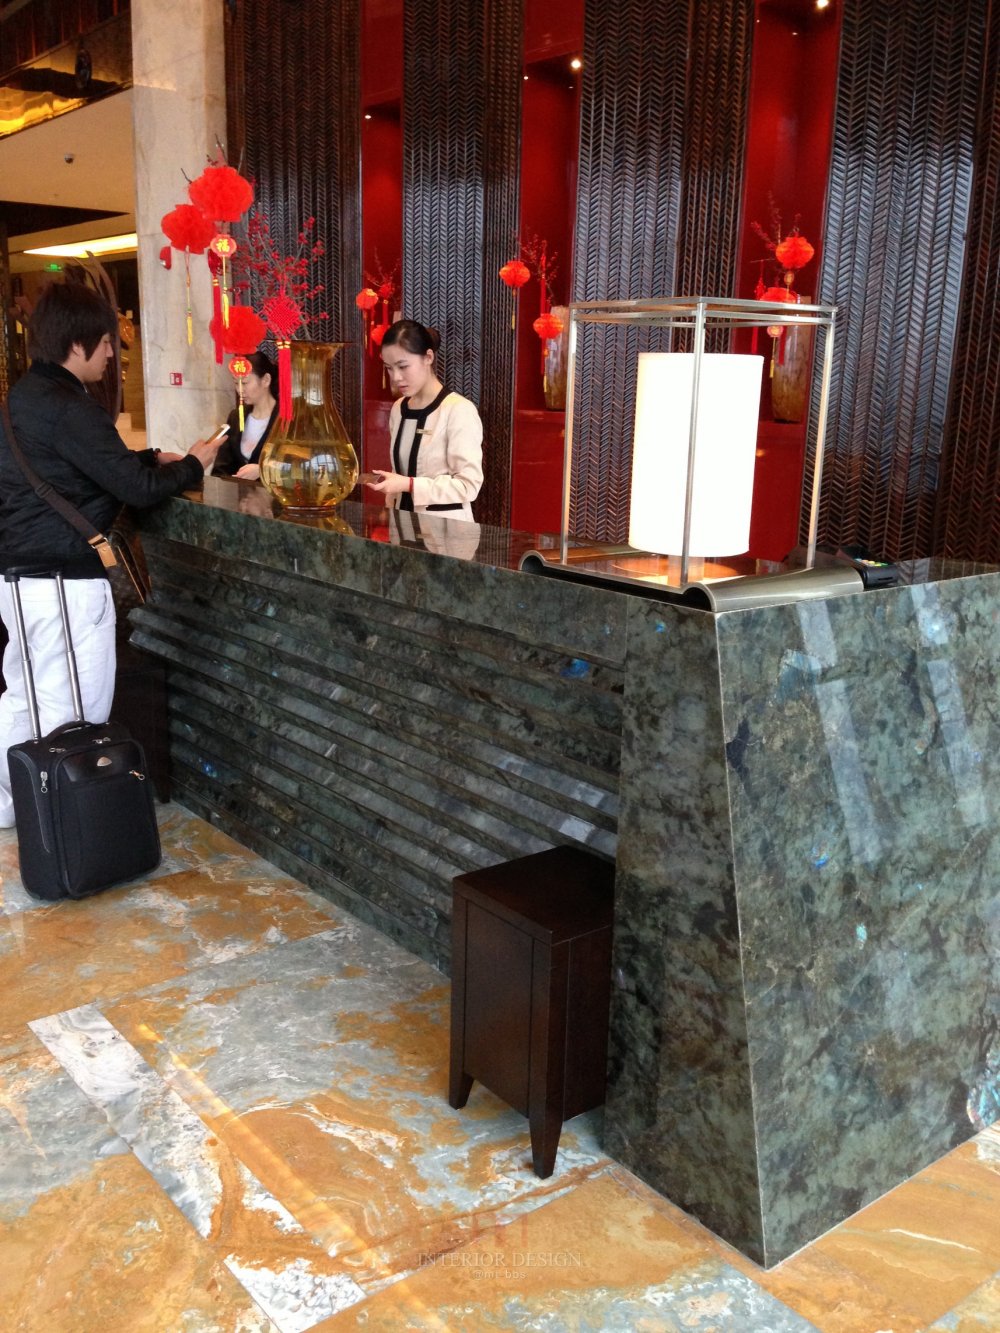 成都丽思卡尔顿酒店The Ritz-Carlton Chengdu(欢迎更新,高分奖励)_IMG_6365.JPG